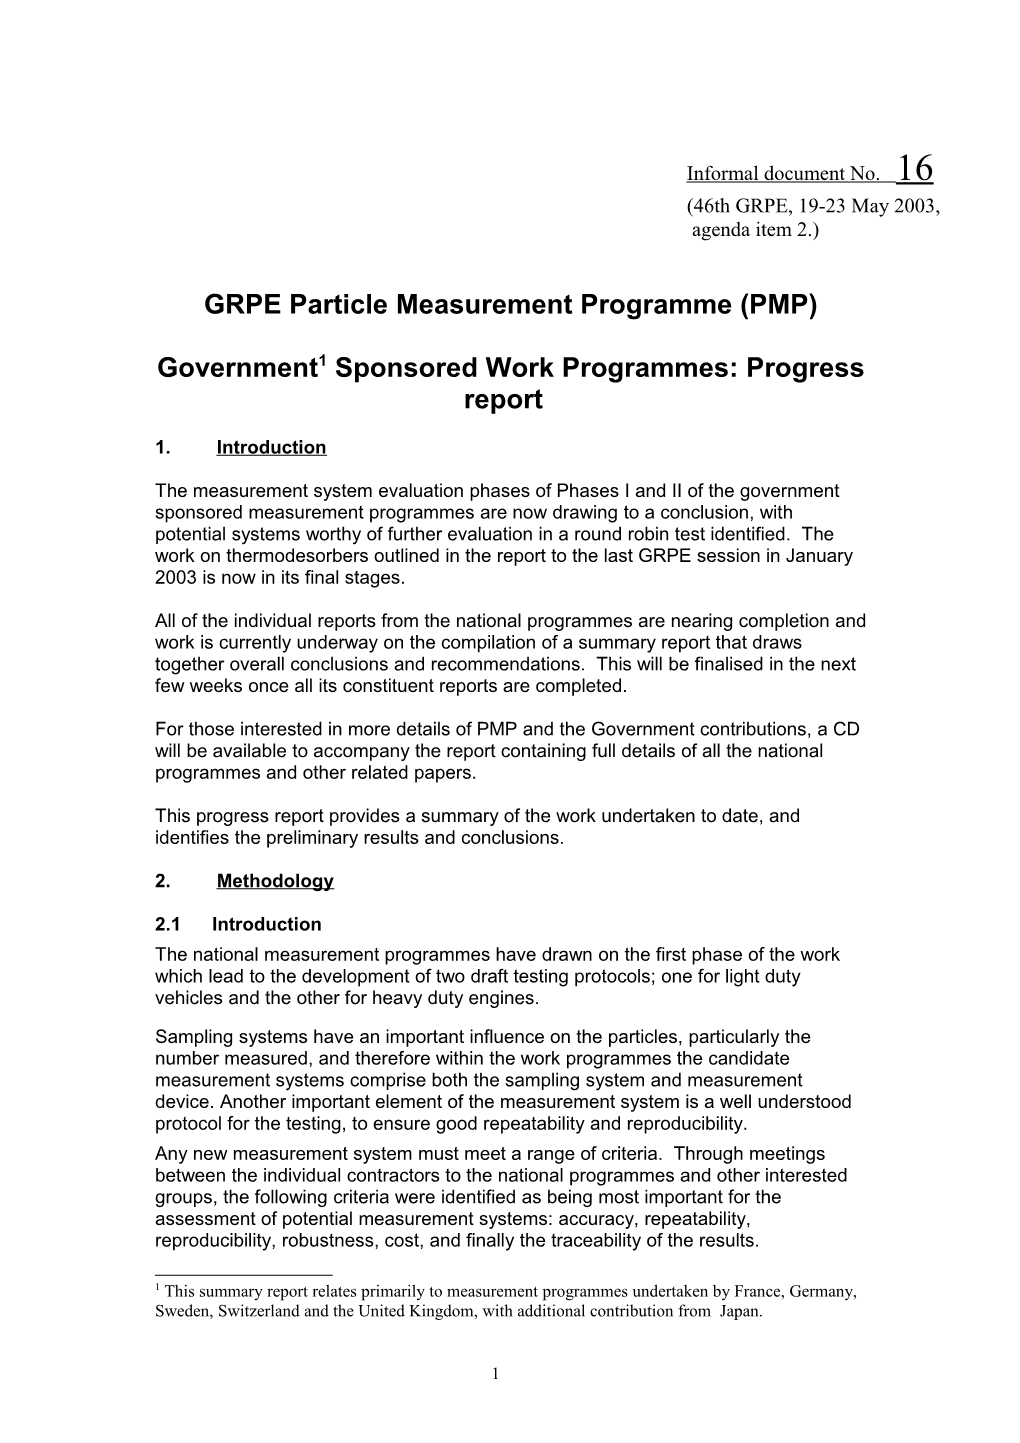 GRPE Particle Measurement Programme (PMP)